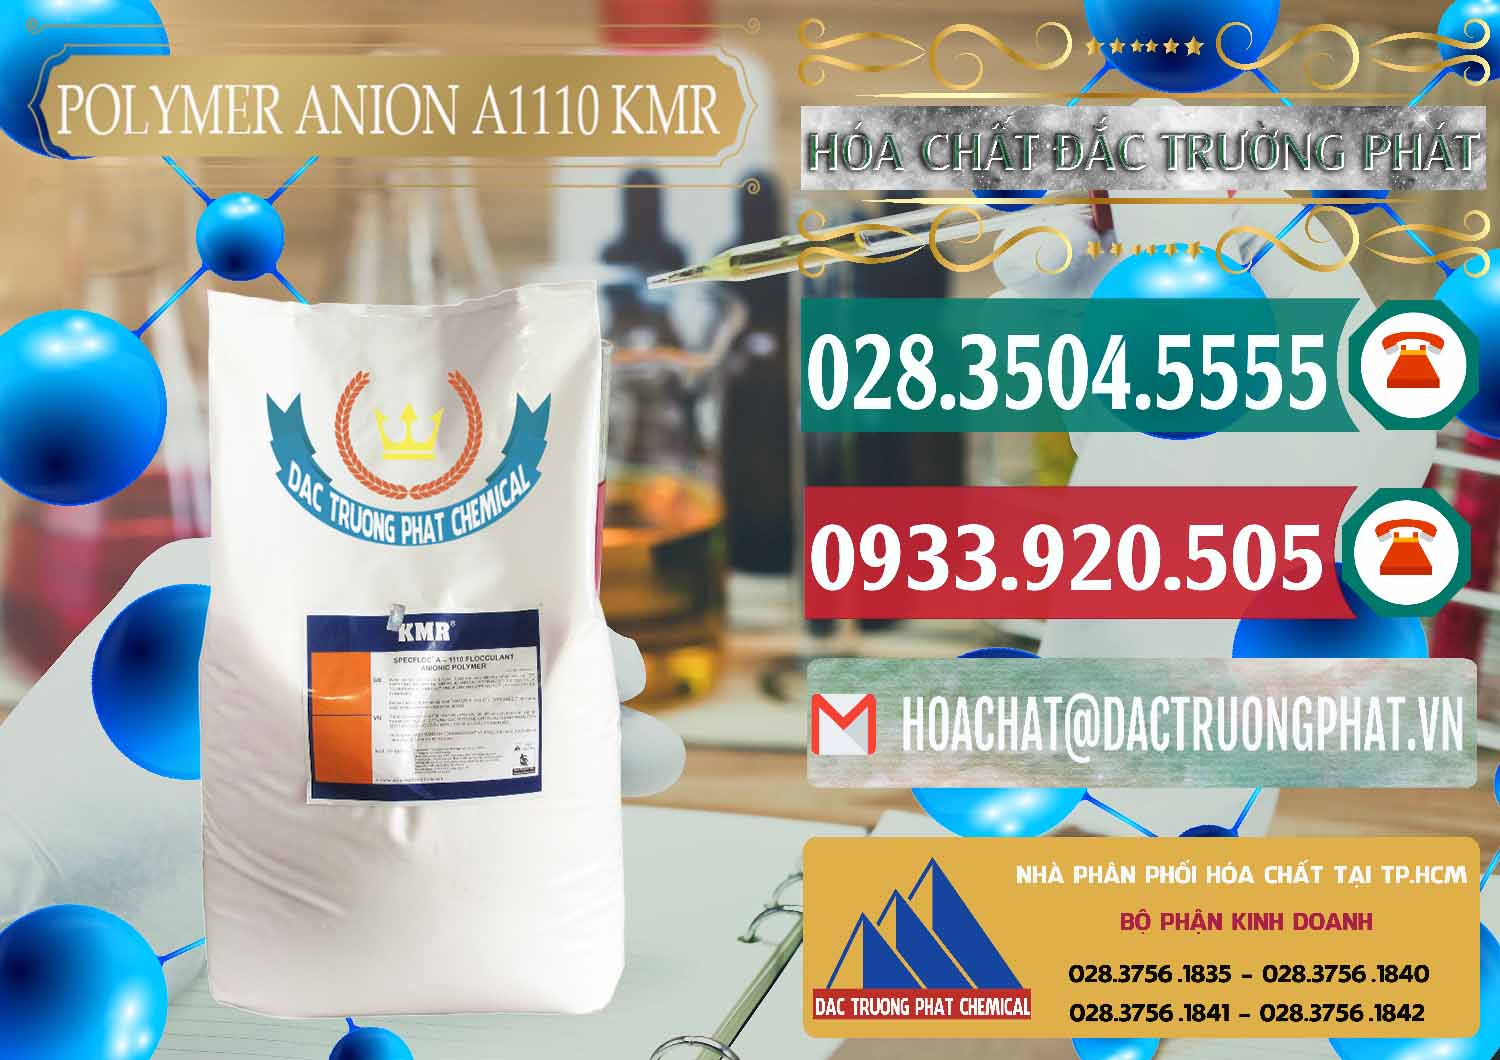 Nơi chuyên bán - cung cấp Polymer Anion A1110 - KMR Anh Quốc England - 0118 - Công ty chuyên kinh doanh ( cung cấp ) hóa chất tại TP.HCM - muabanhoachat.vn